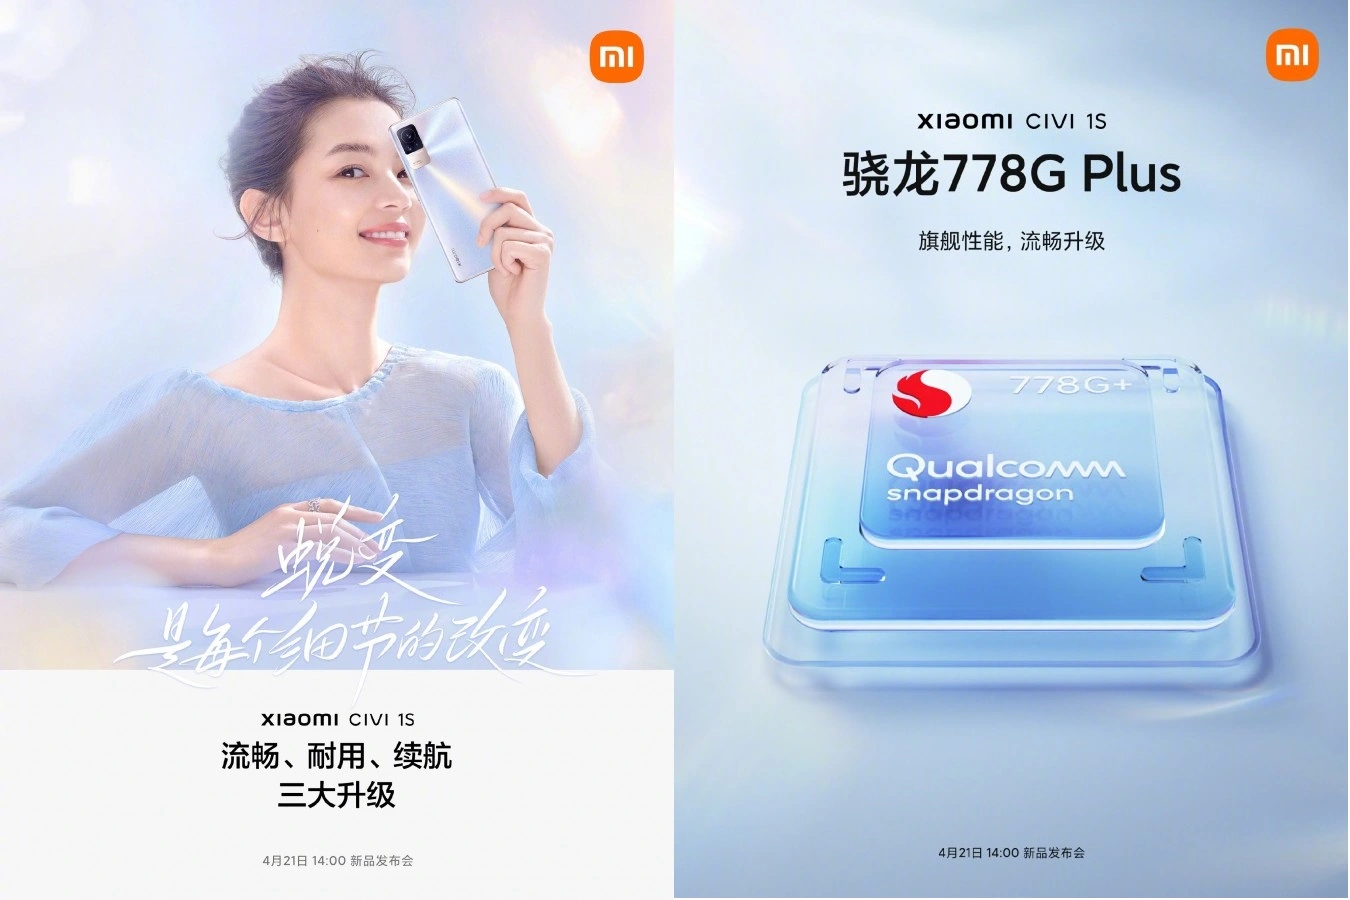 Xiaomi Civi 1S wird glatter und langlebig sein als der Vorgänger